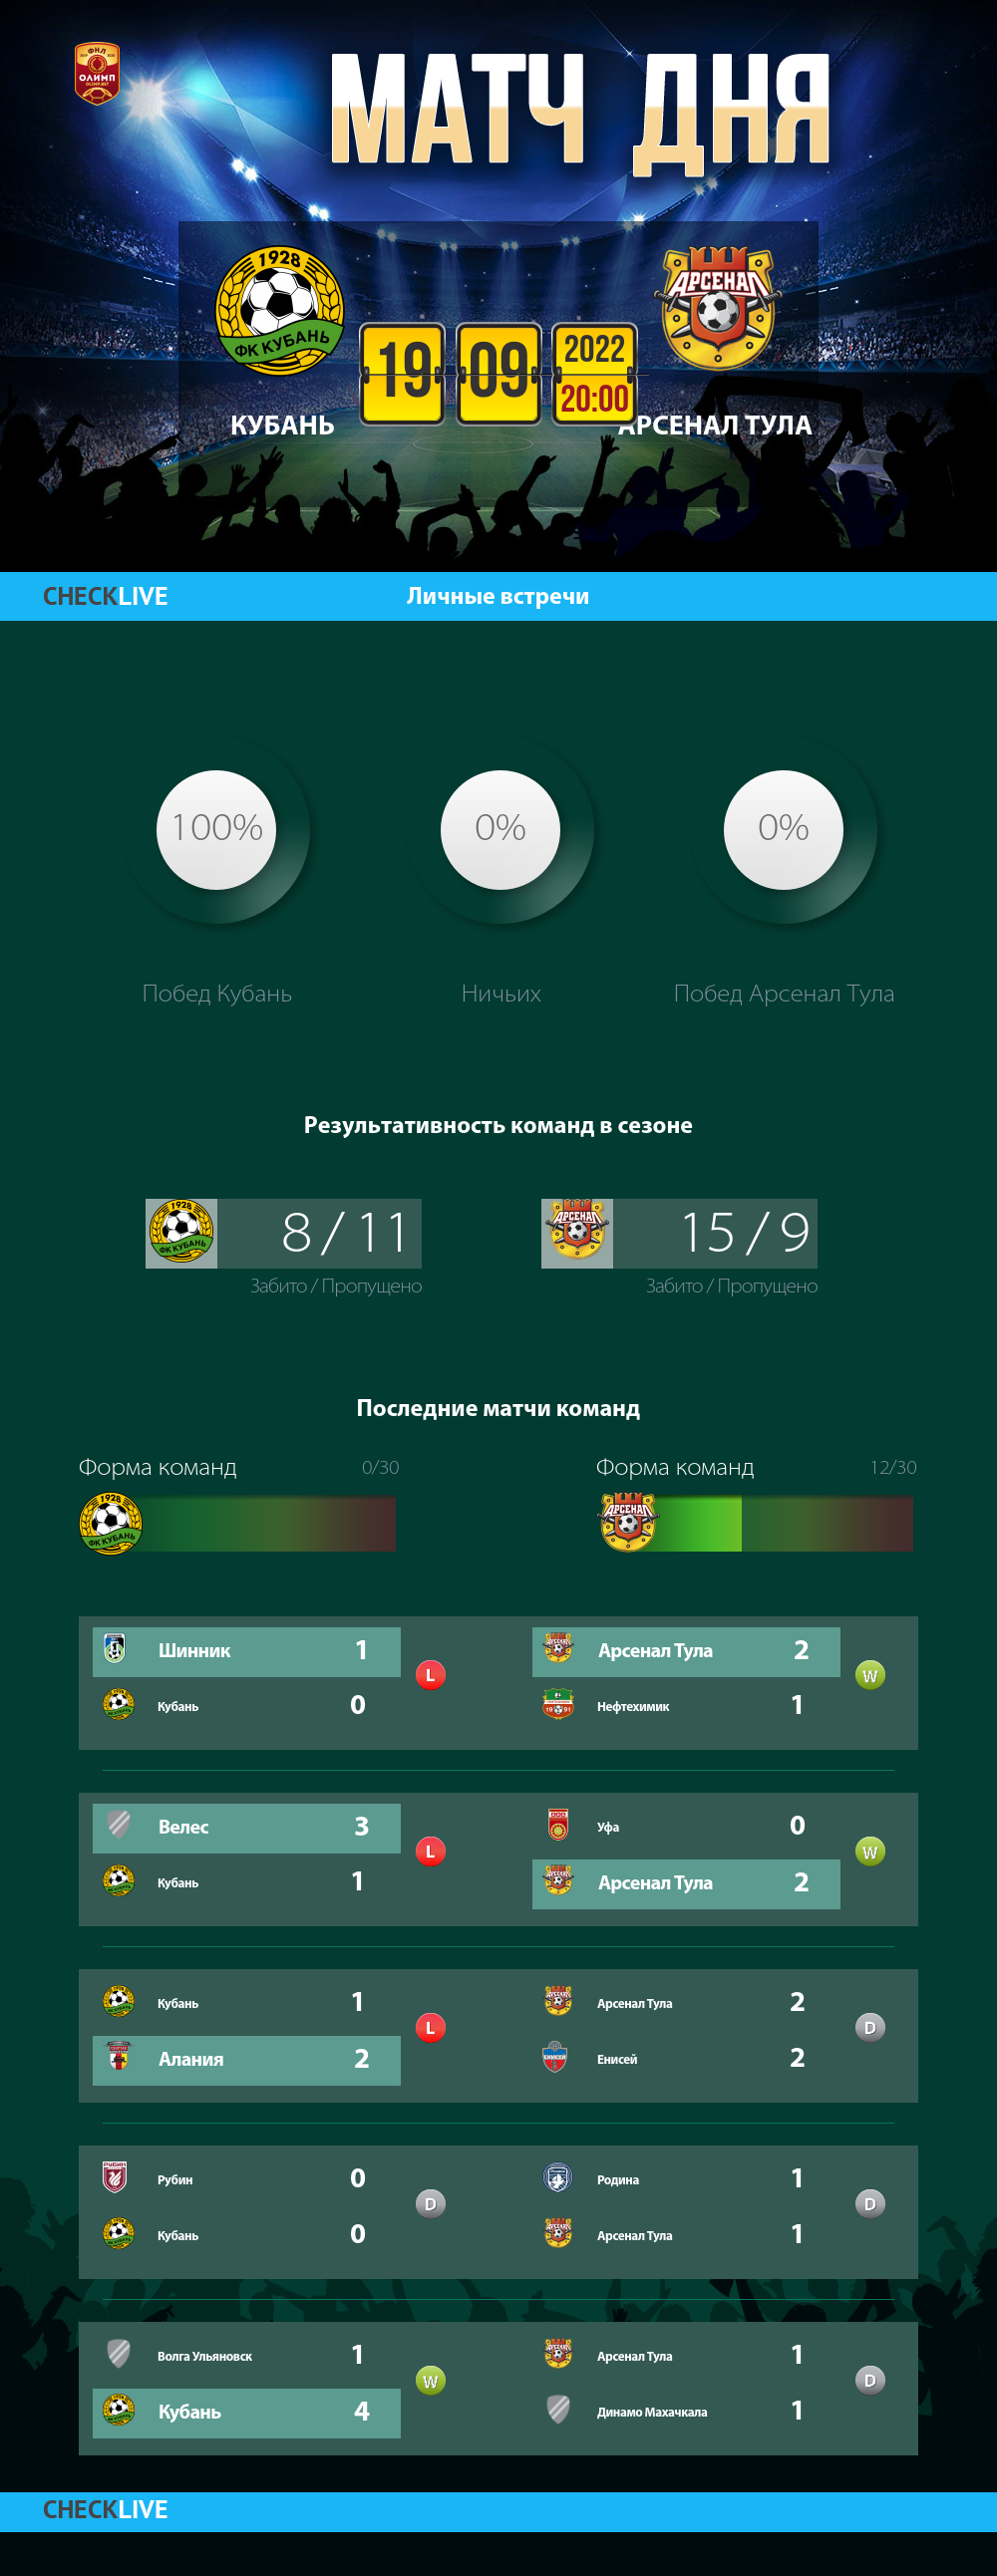 Инфографика Кубань и Арсенал Тула матч дня 19.09.2022